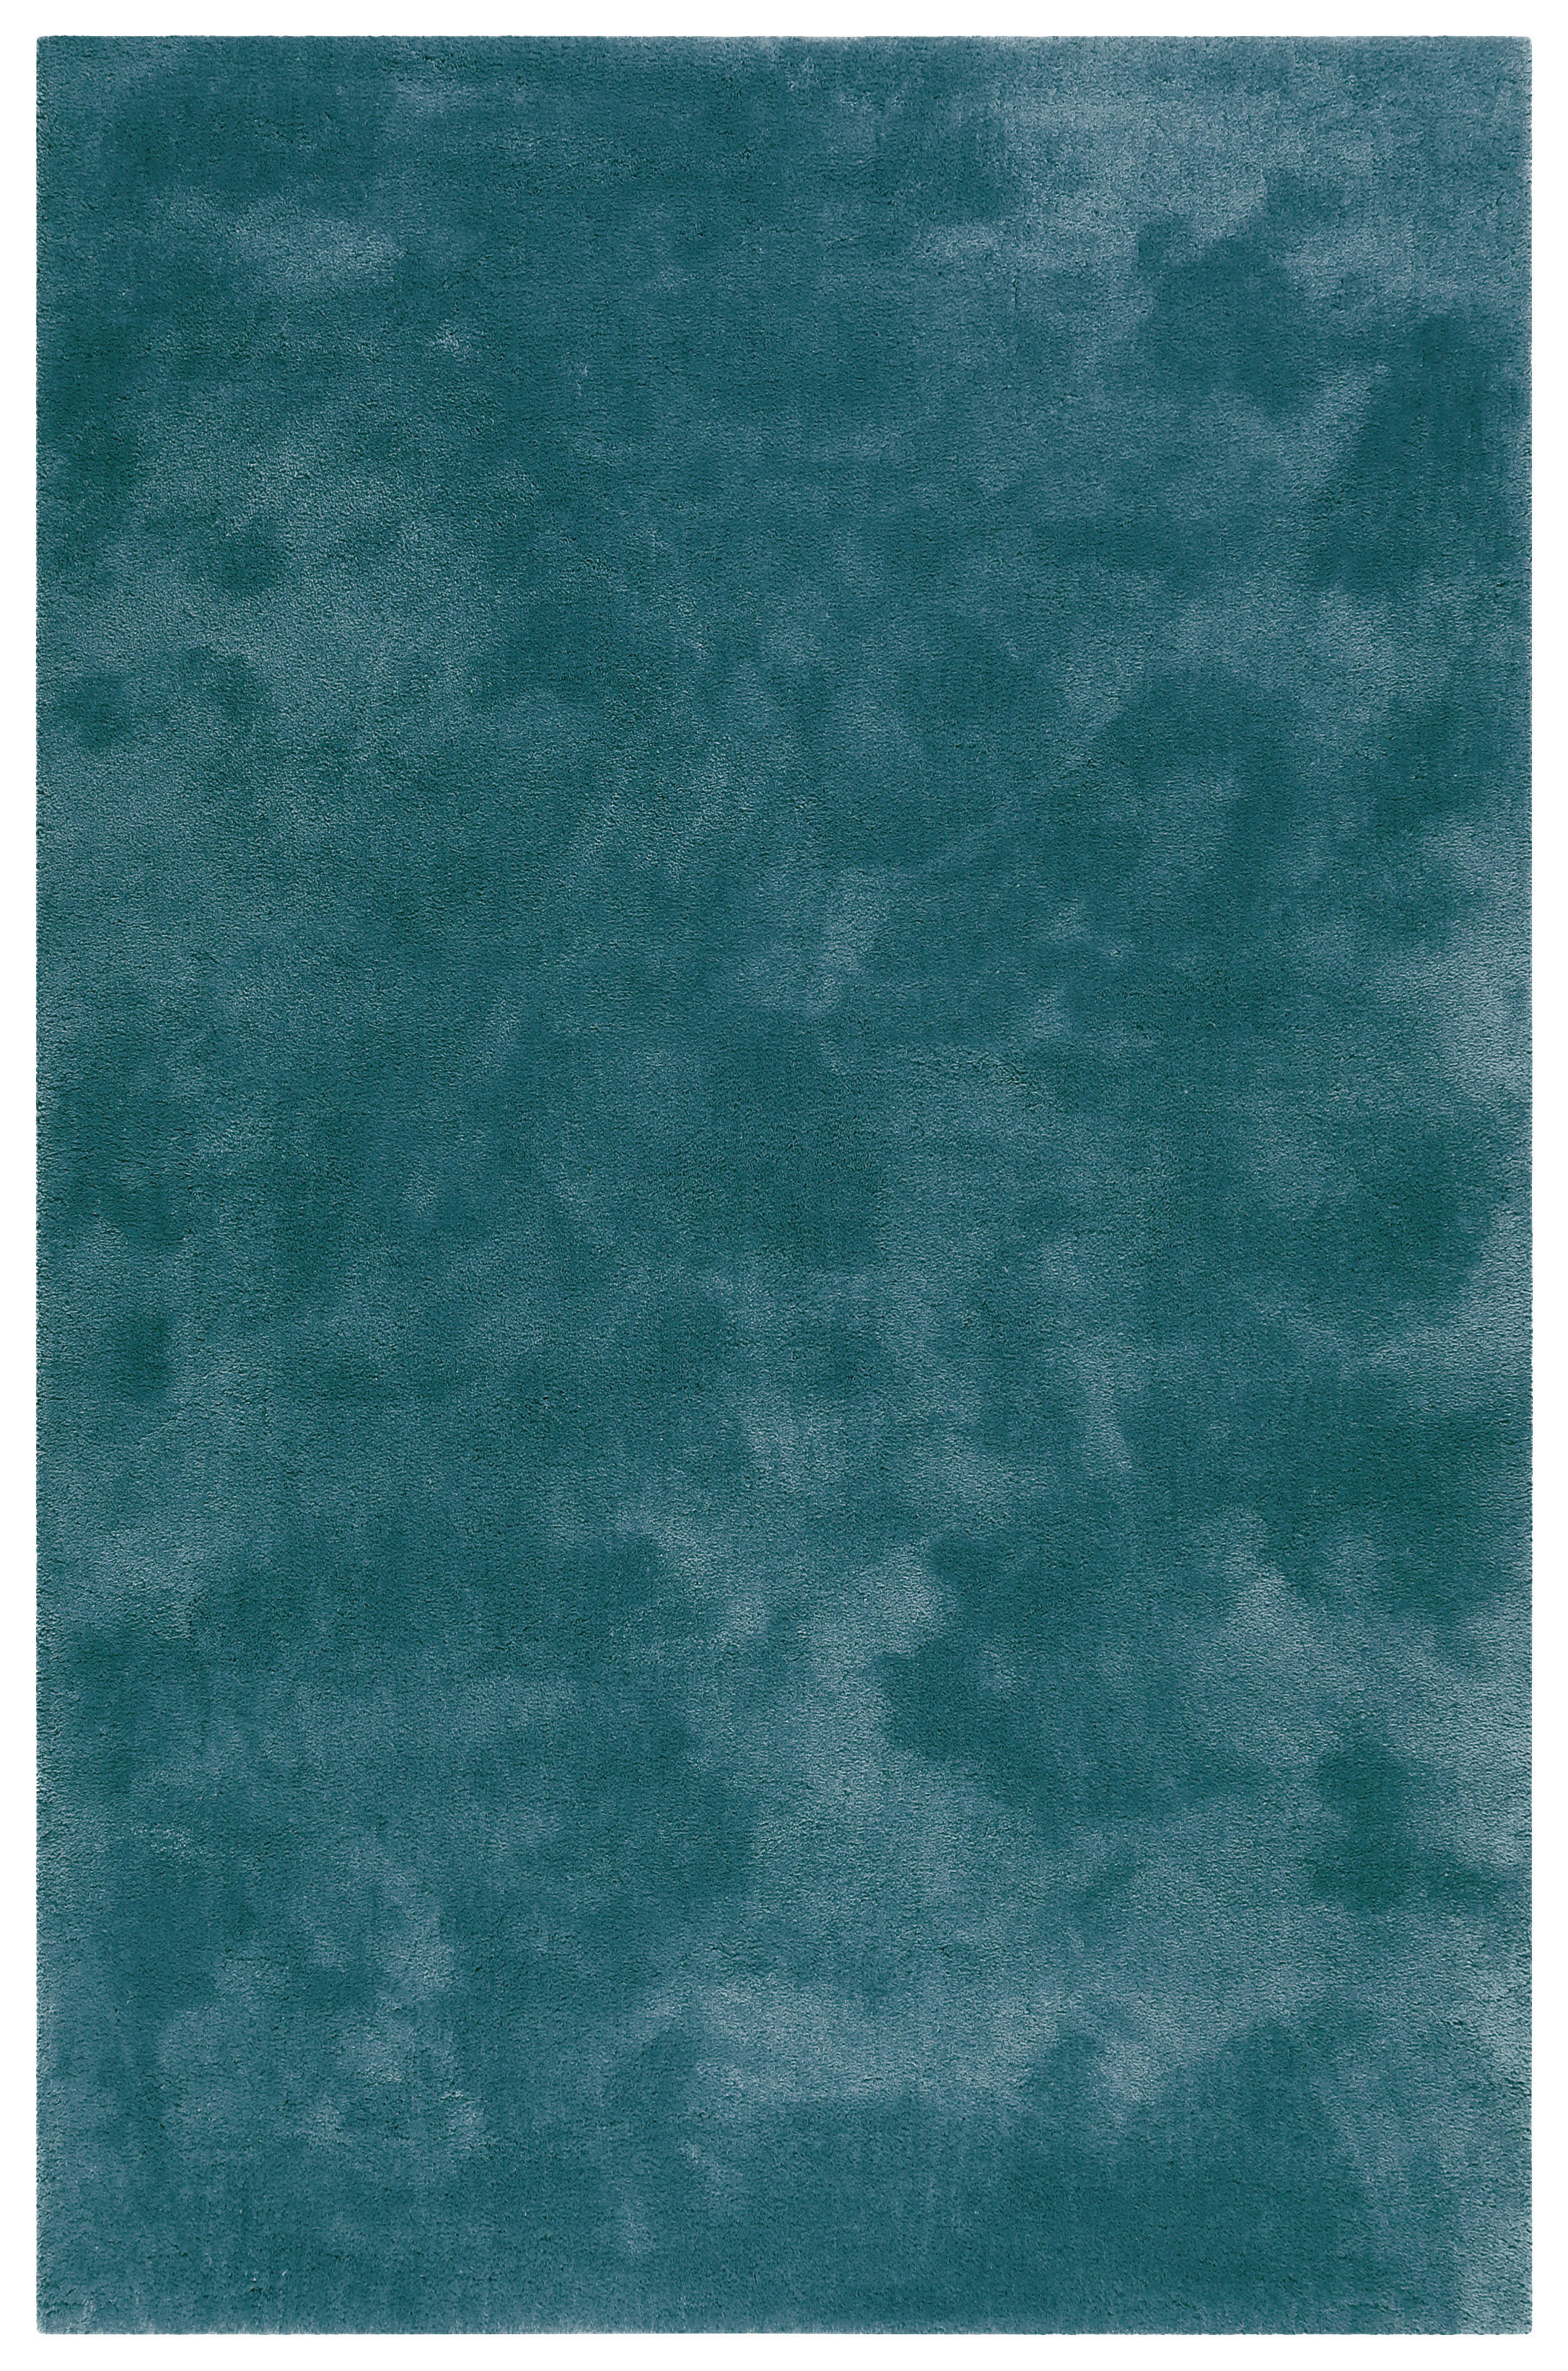 HOCHFLORTEPPICH  80/150 cm  getuftet  Smaragdgrün   - Smaragdgrün, KONVENTIONELL, Textil (80/150cm) - Esprit